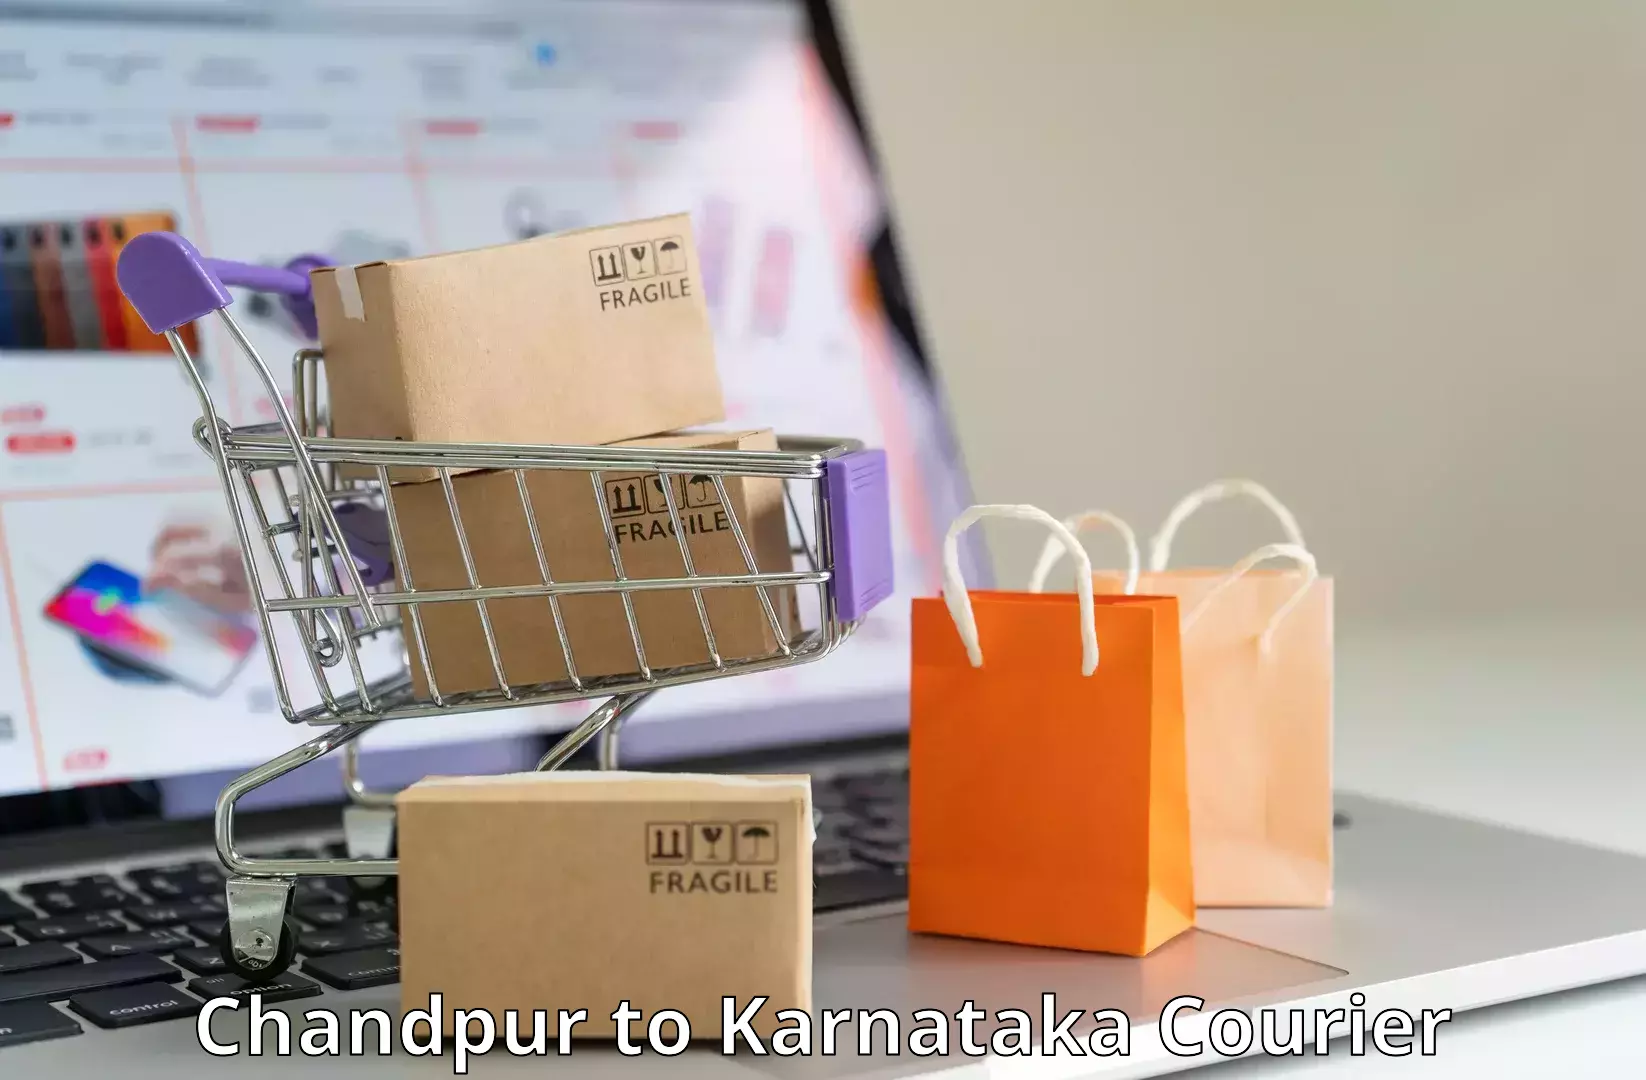 Customer-friendly courier services Chandpur to Karnataka